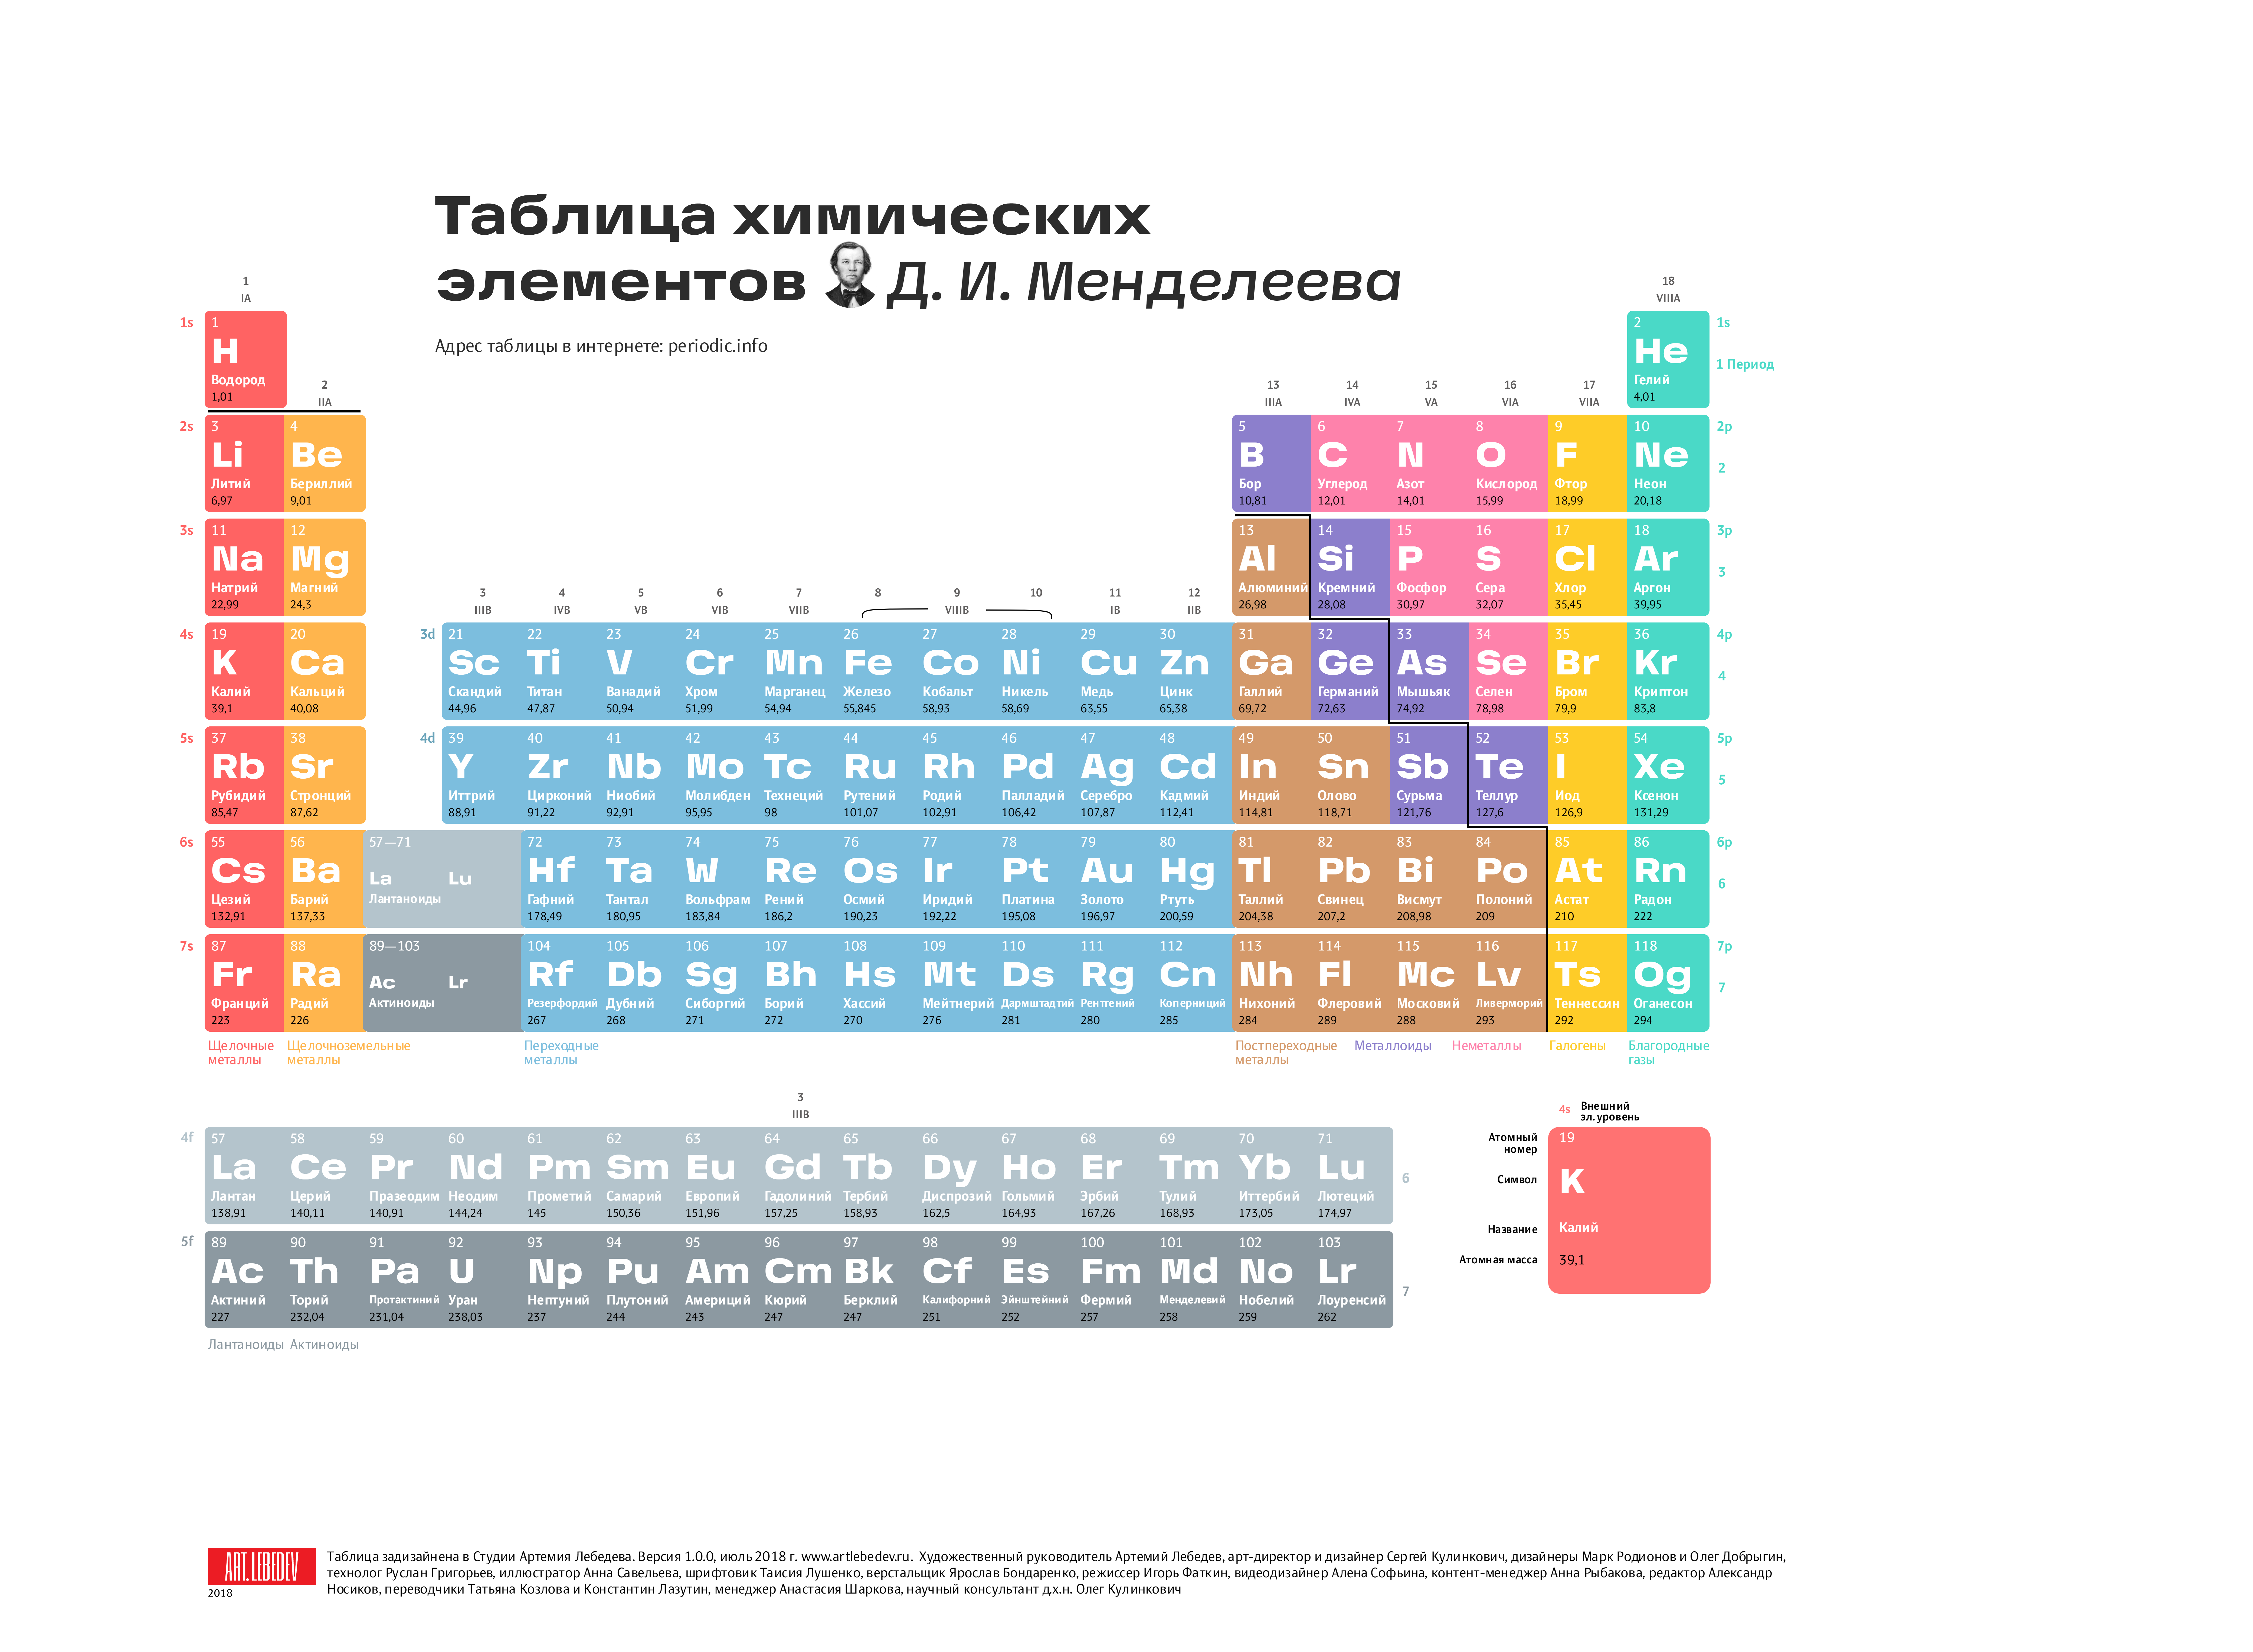 8 элемент в таблице менделеева. Современная таблица Менделеева 118 элементов. Длиннопериодный вариант таблицы Менделеева. Первые 20 элементов таблицы Менделеева. Химия просто таблица Менделеева 2.0.